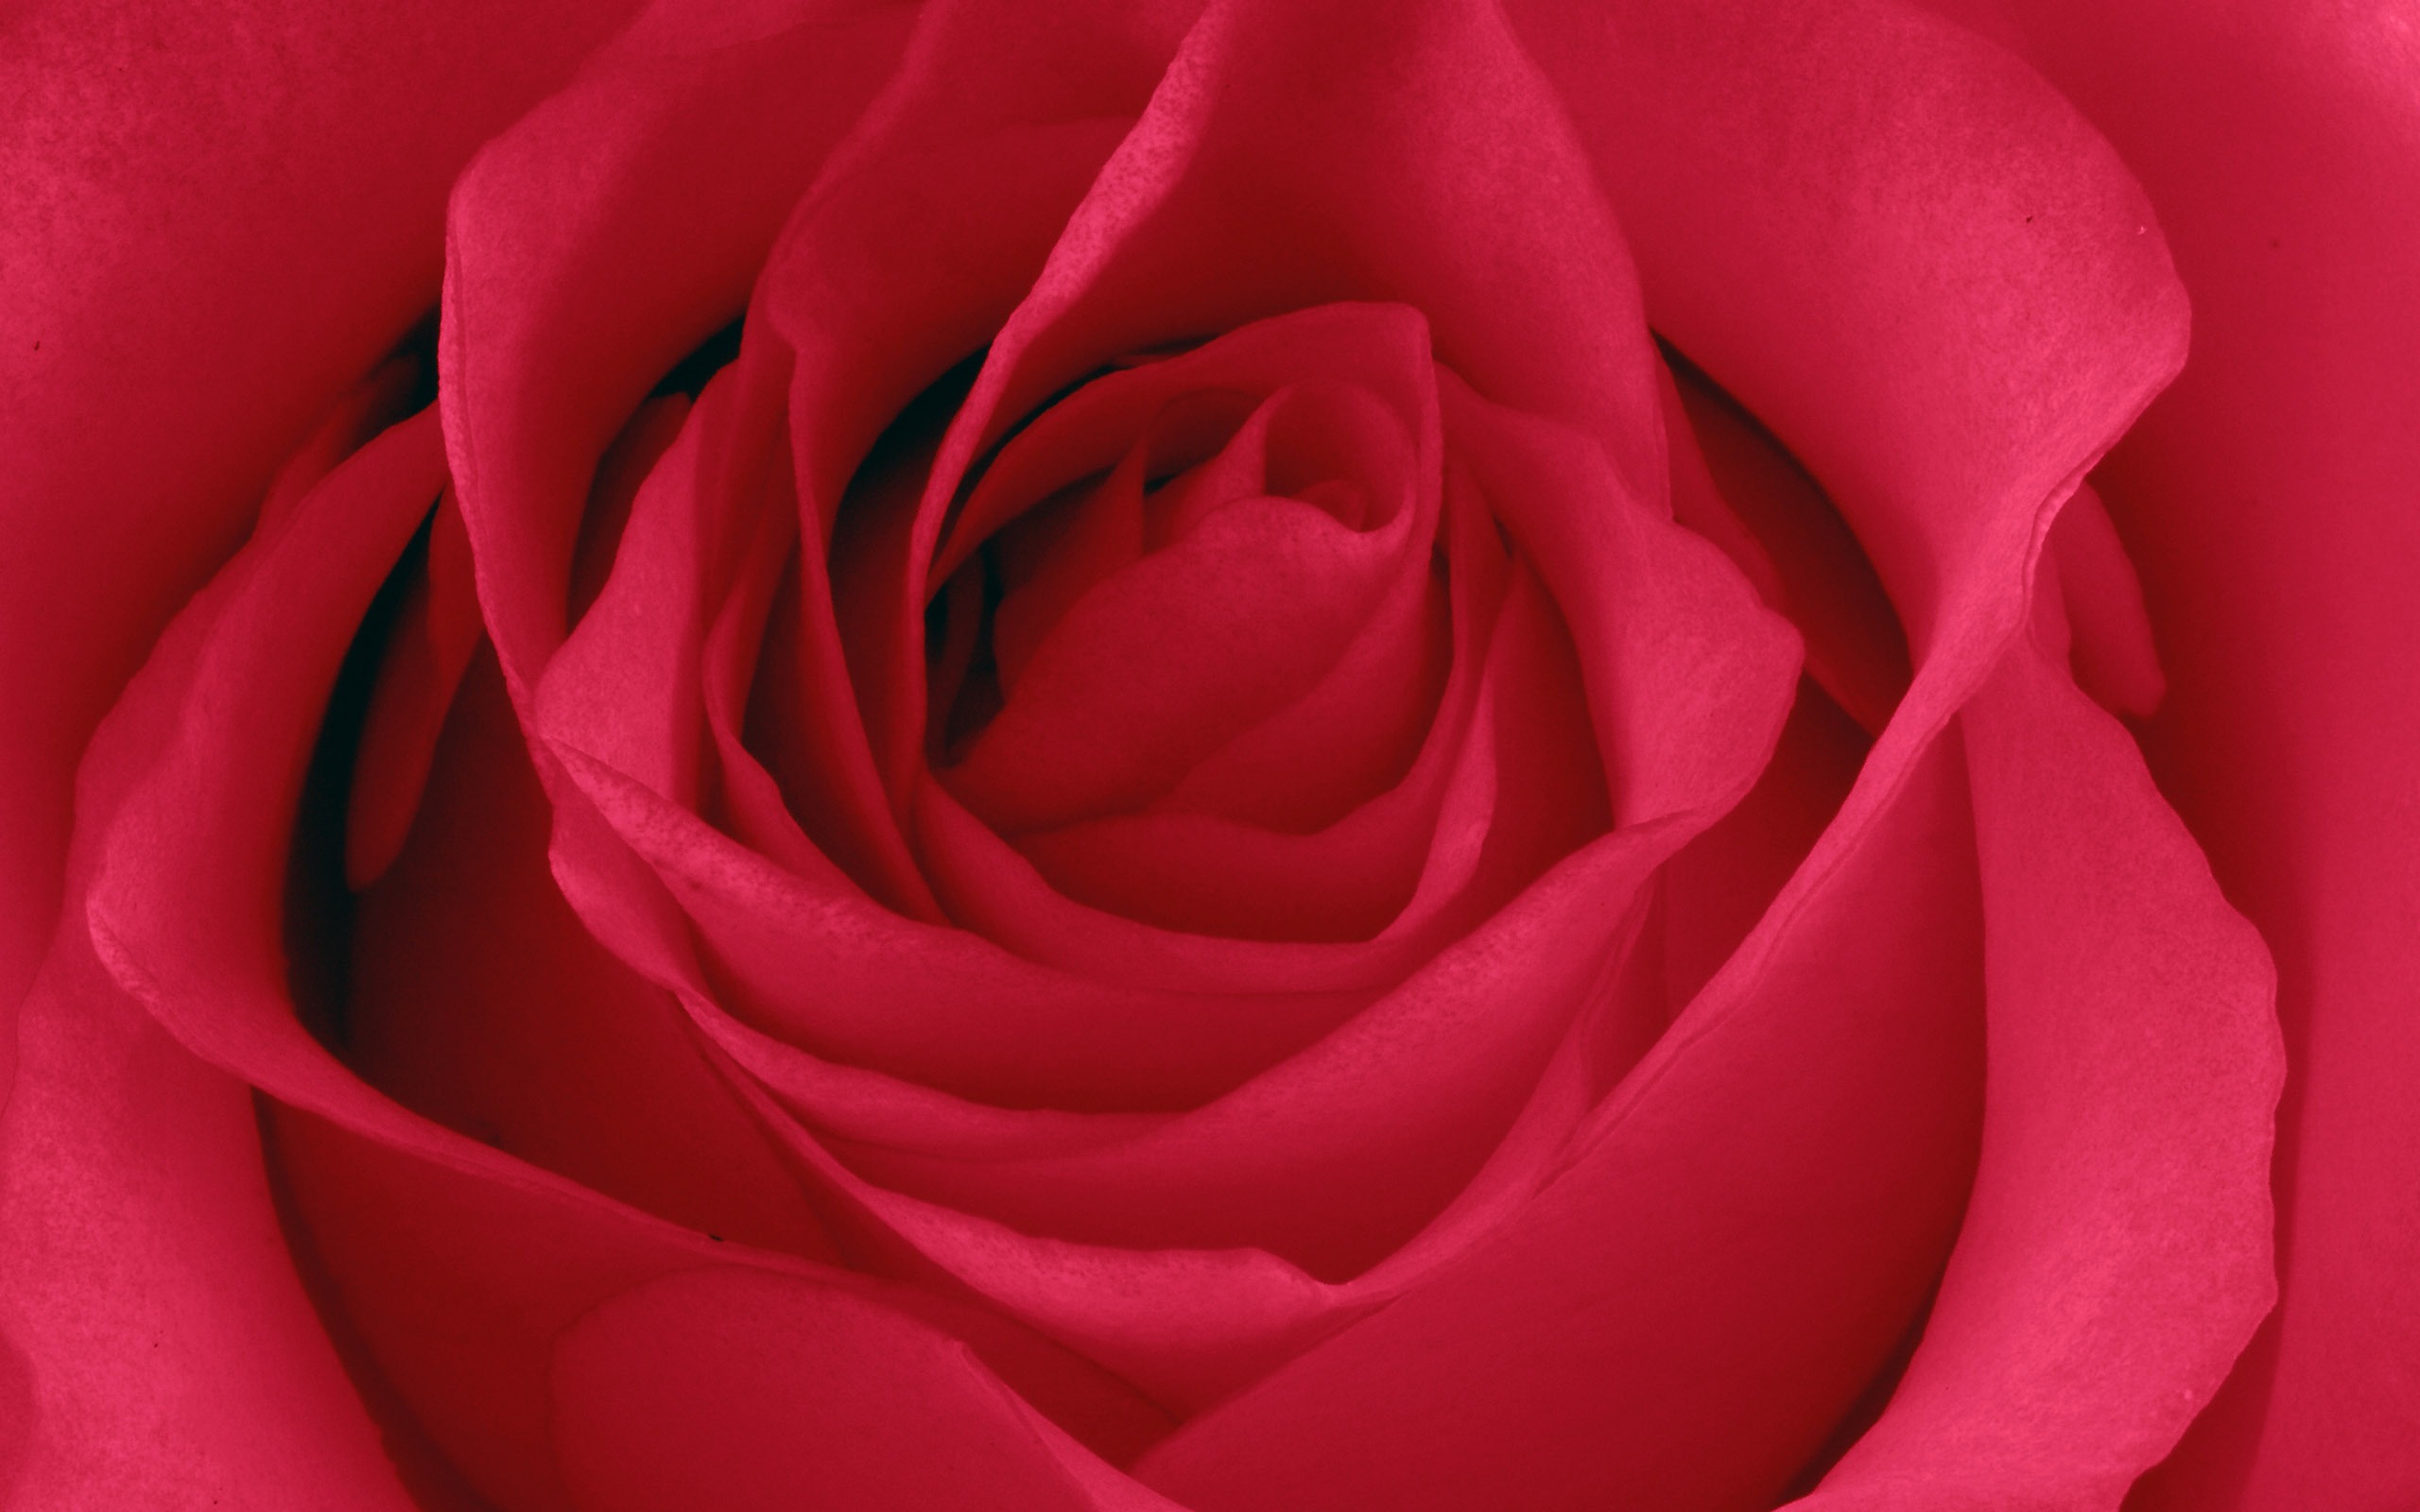 超大玫瑰写真 壁纸(五)11 - 2560x1600